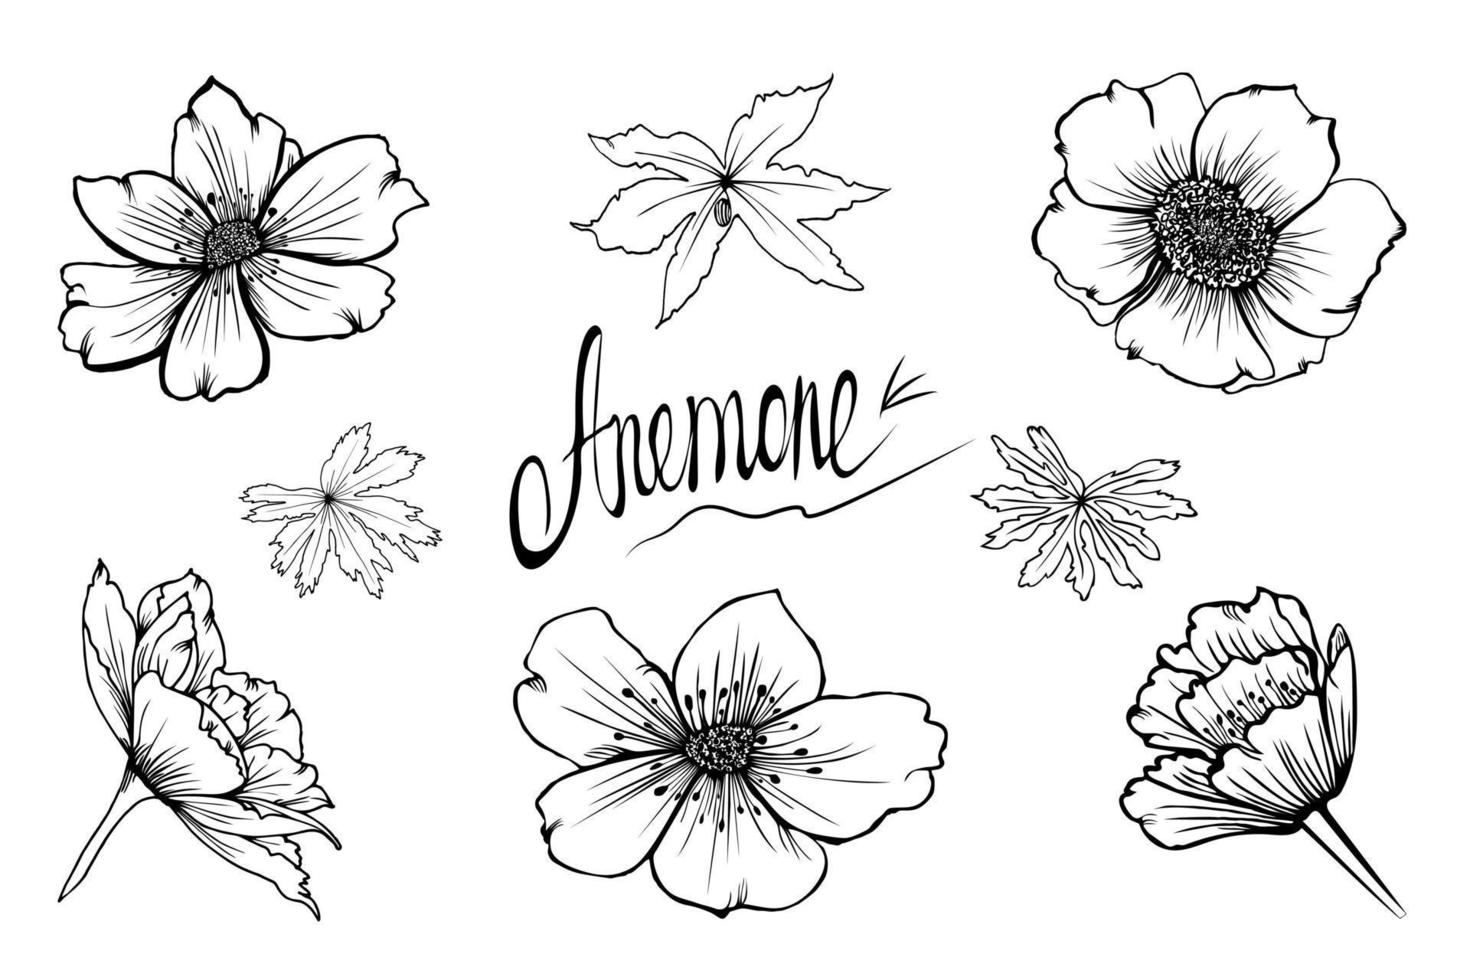 conjunto de flores de anêmona vetorial desenhadas à mão, botões e folhas em estilo de desenho isolado no fundo branco vetor